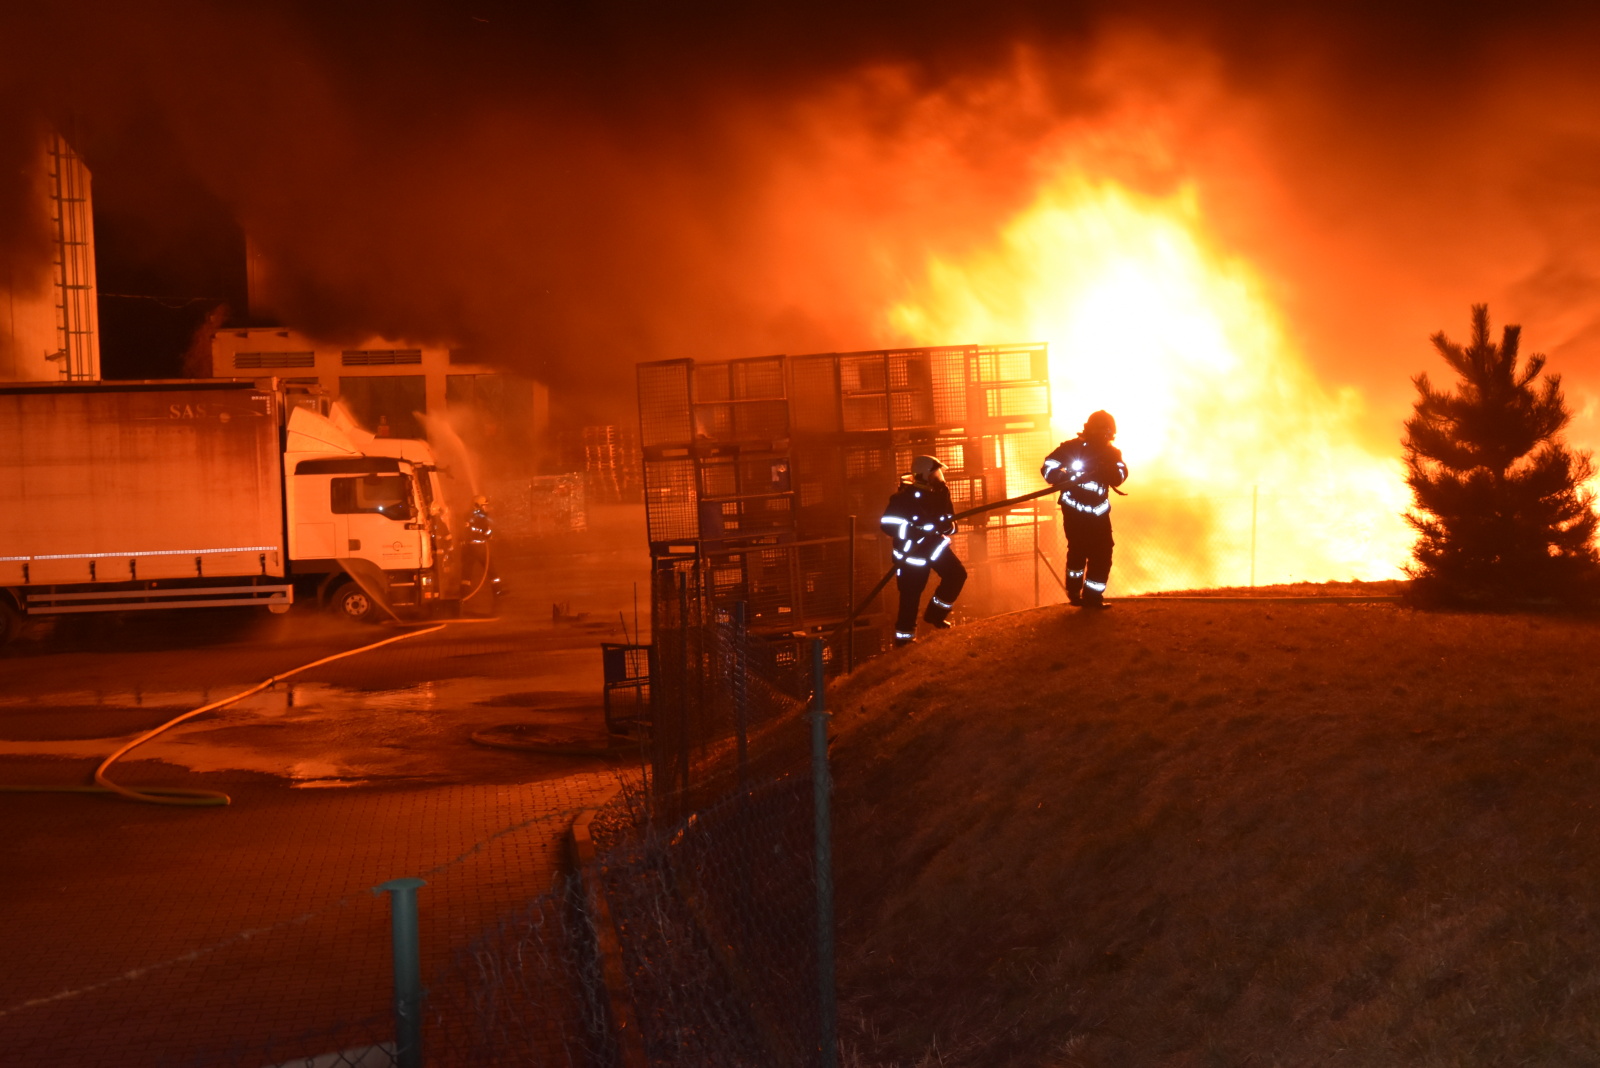 011-Rozsáhlý požár výrobních a skladovacích hal v Mladé Boleslavi likvidovaný ve zvláštním stupni.JPG